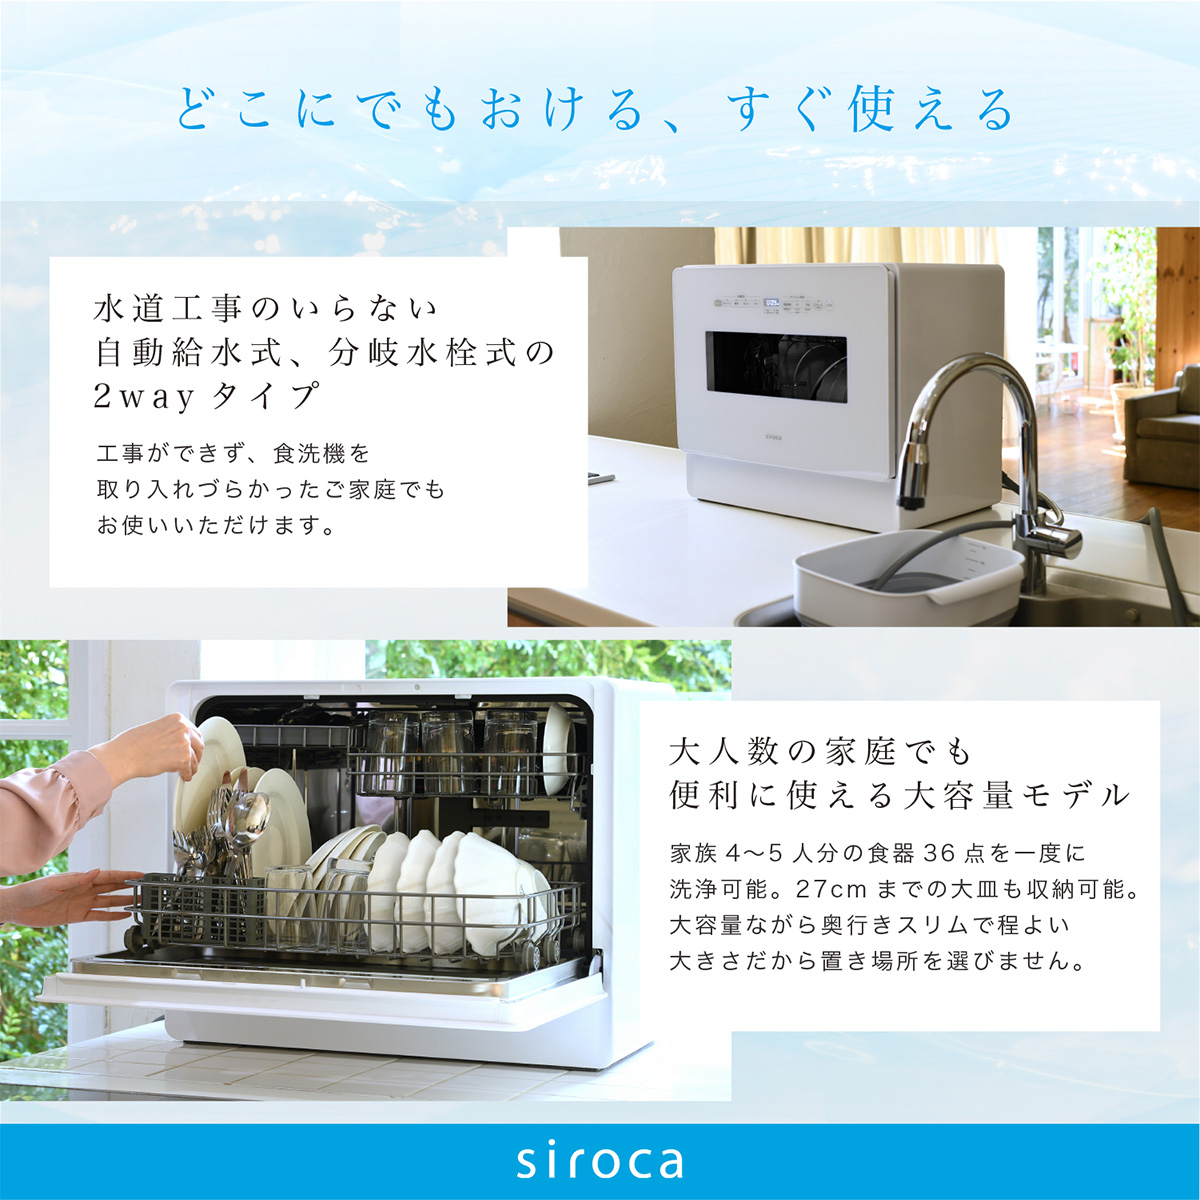 ひかりＴＶショッピング | siroca 2WAY 食器洗い乾燥機 4~5人用 オート